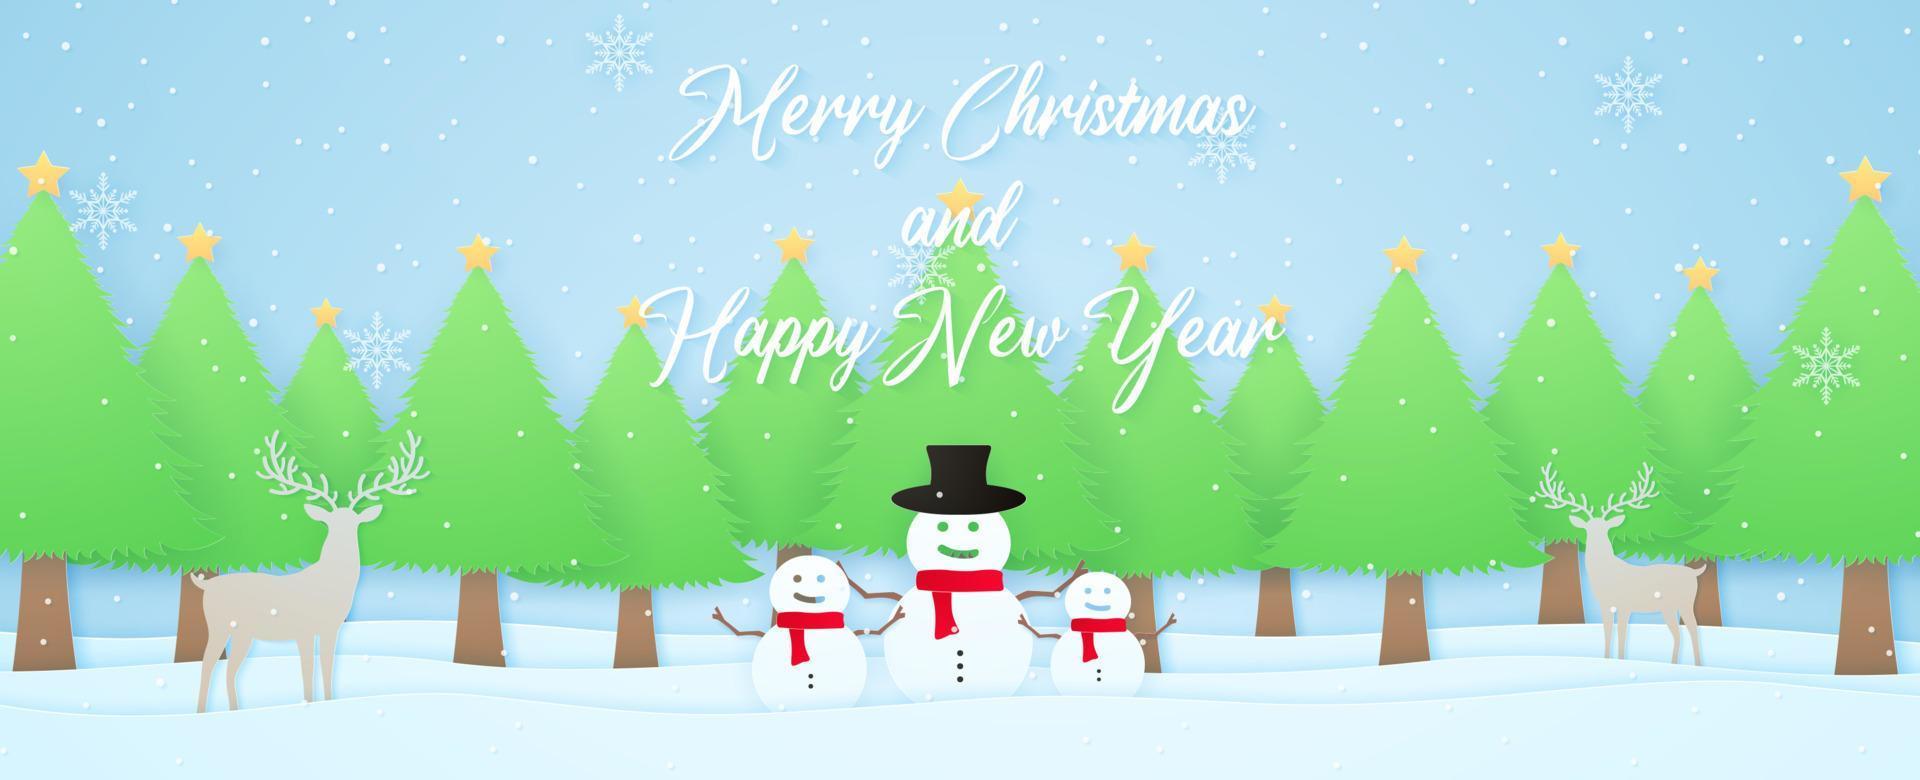 prettige kerstdagen en gelukkig nieuwjaar, winterlandschap, rendieren, sneeuwpop en kerstbomen op sneeuw met vallende sneeuw en sneeuwvlokken, belettering, papierkunststijl vector